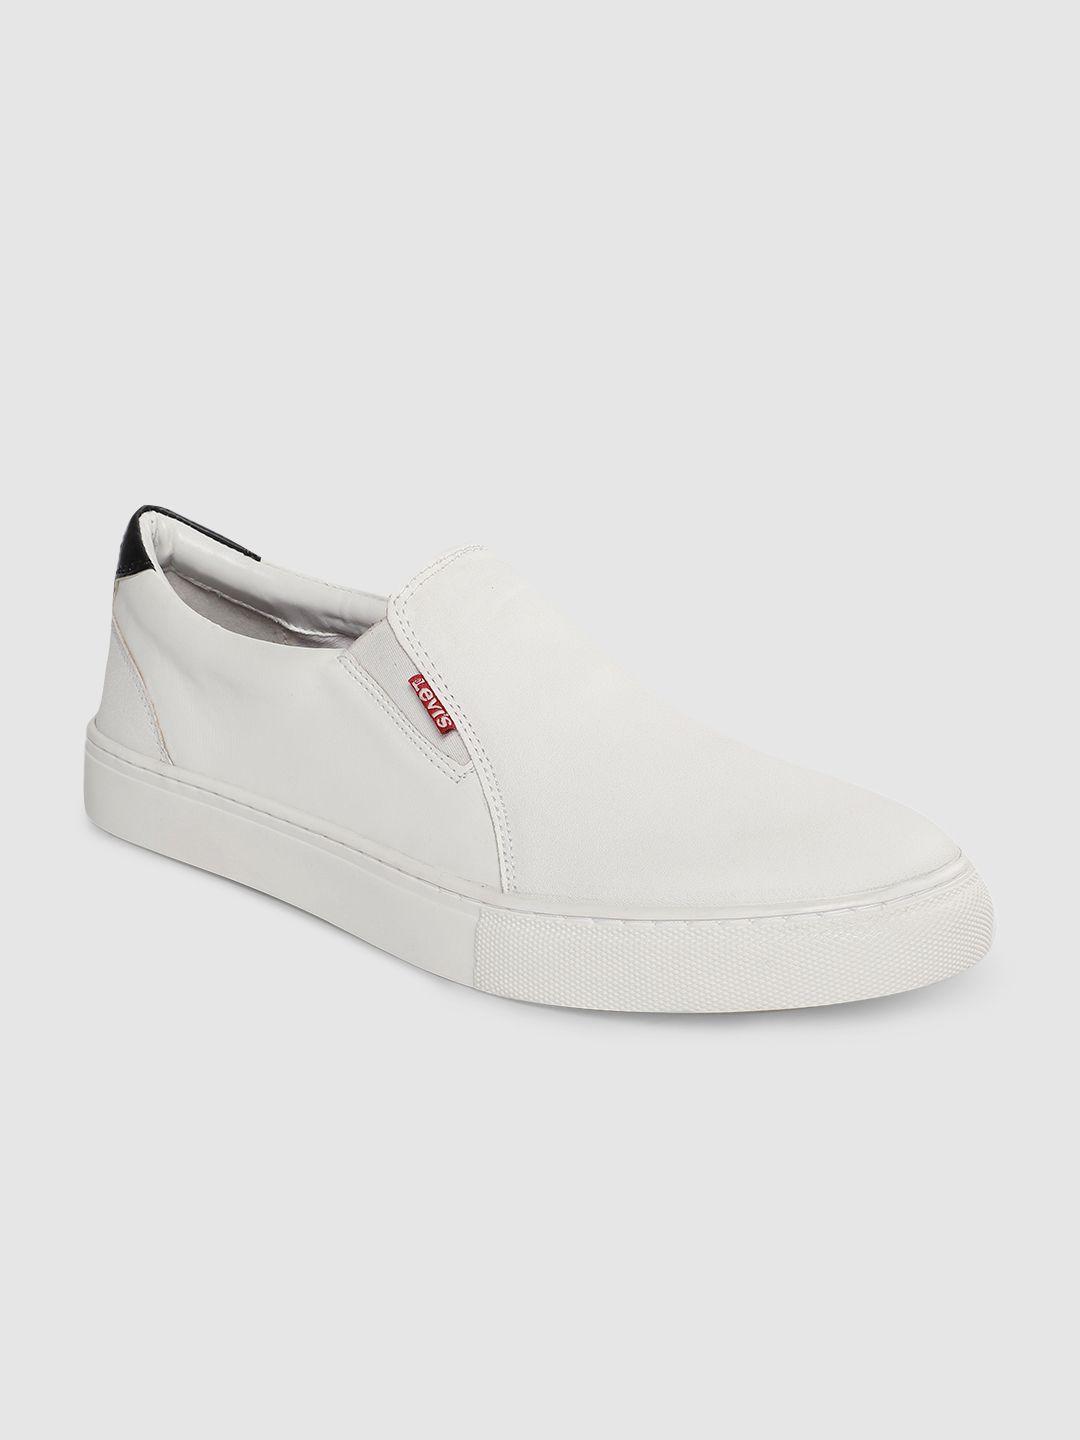 levis men white slip-on sneakers